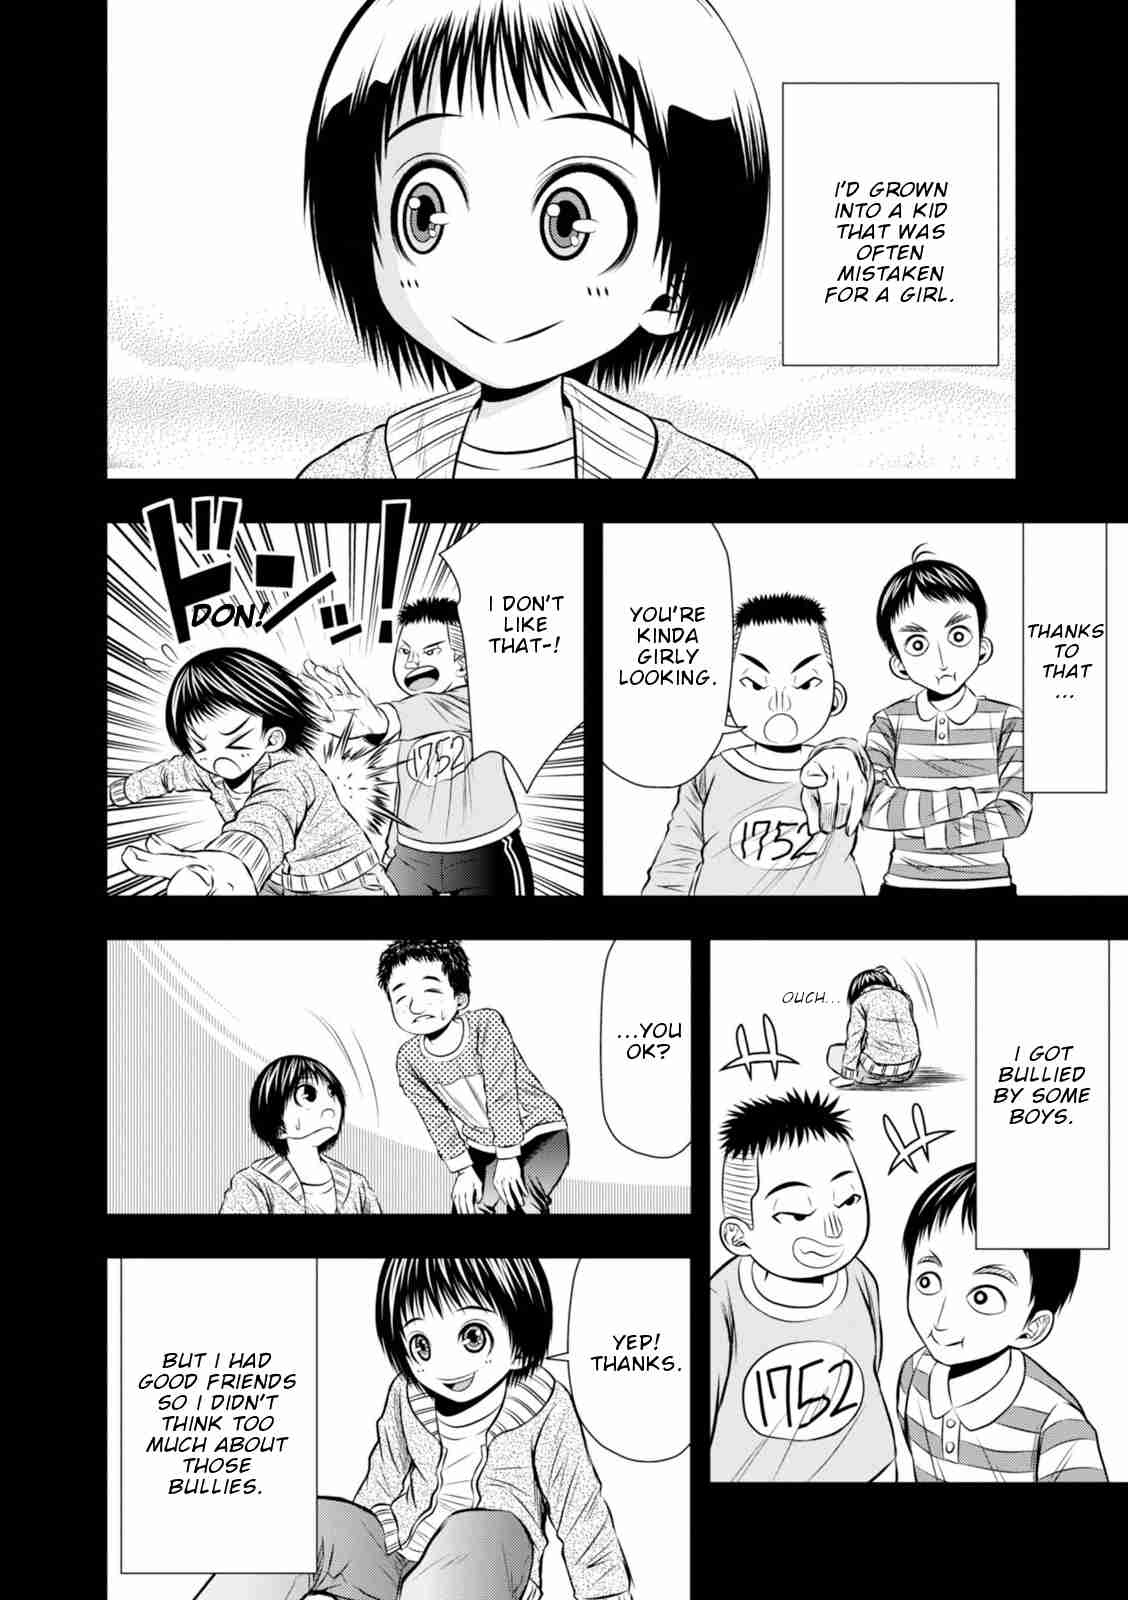 Umareru Seibetsu wo Machigaeta! Vol. 1 Ch. 9 Broken Childhood